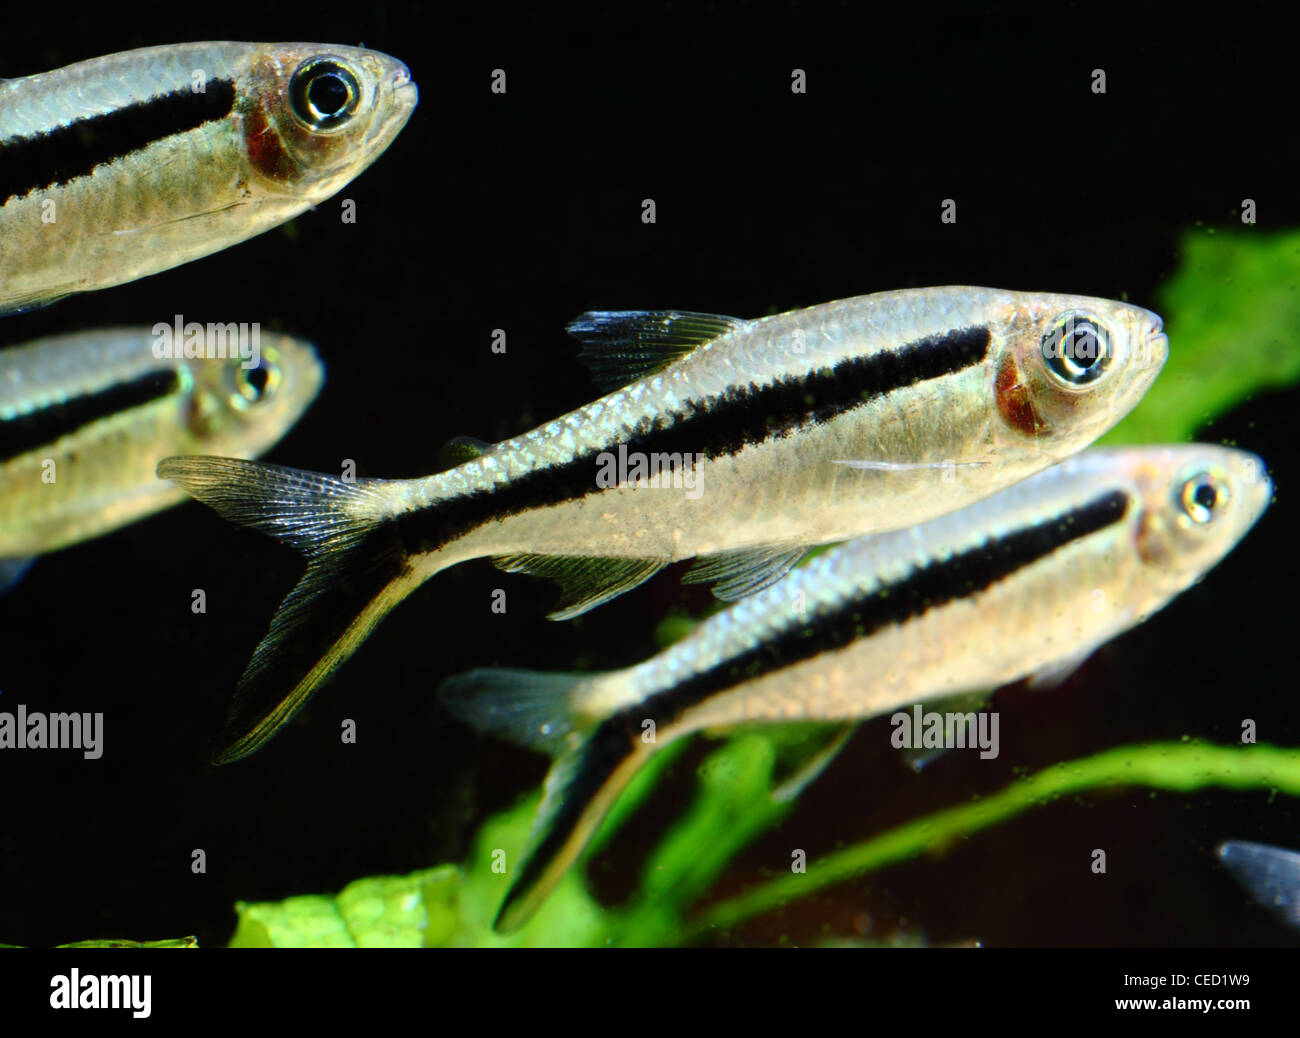 Einen kleinen Fischschwarm weiße und schwarze Fische (Gattung Thayeria) in einem Aquarium Stockfoto